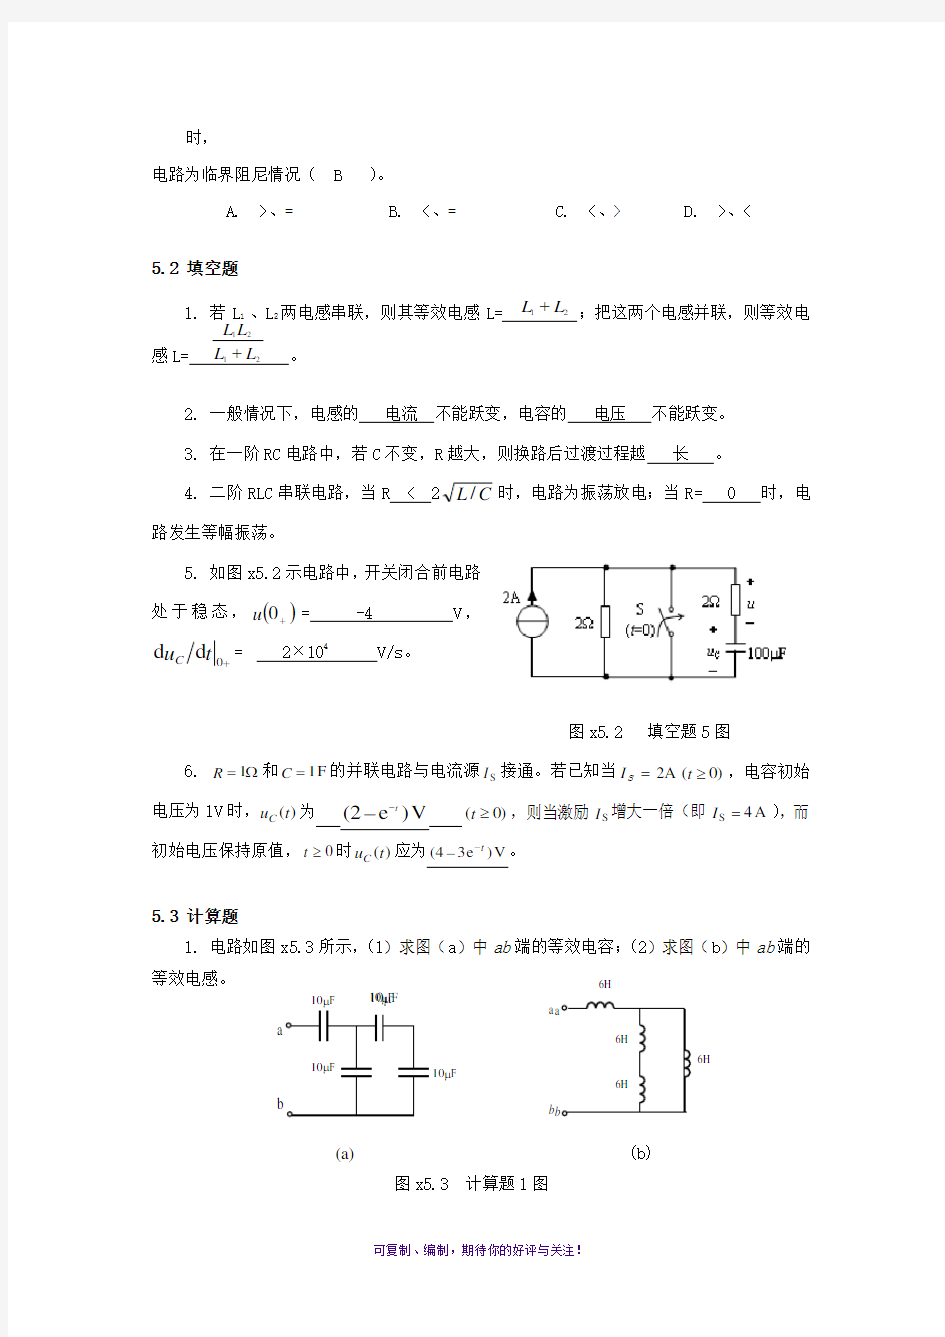 电路分析基础习题第五章答案(史健芳)